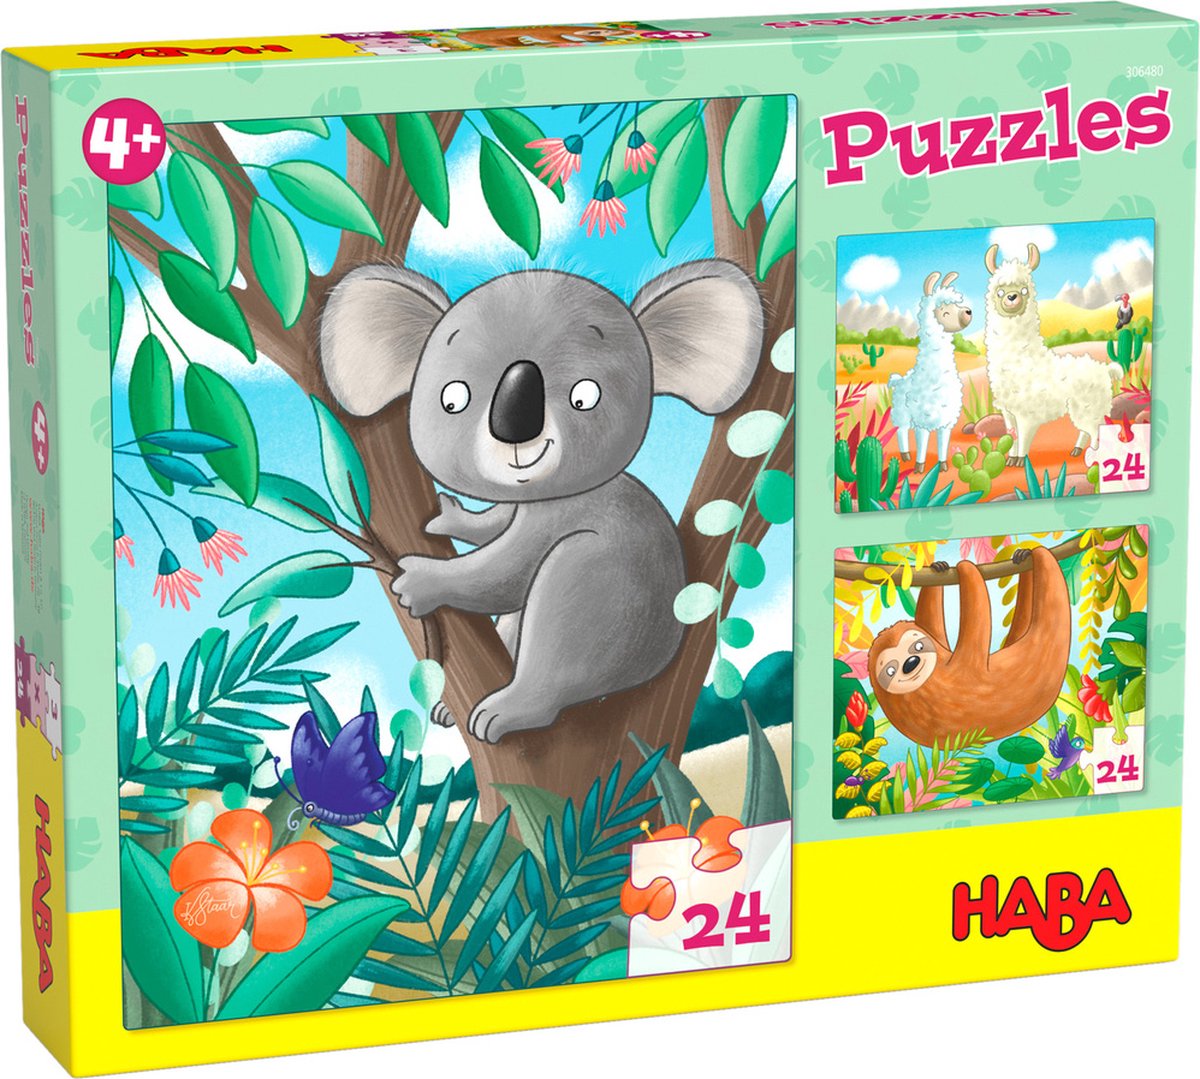 Haba Kinderpuzzels Koala, Luiaard & Co Karton 3-delig